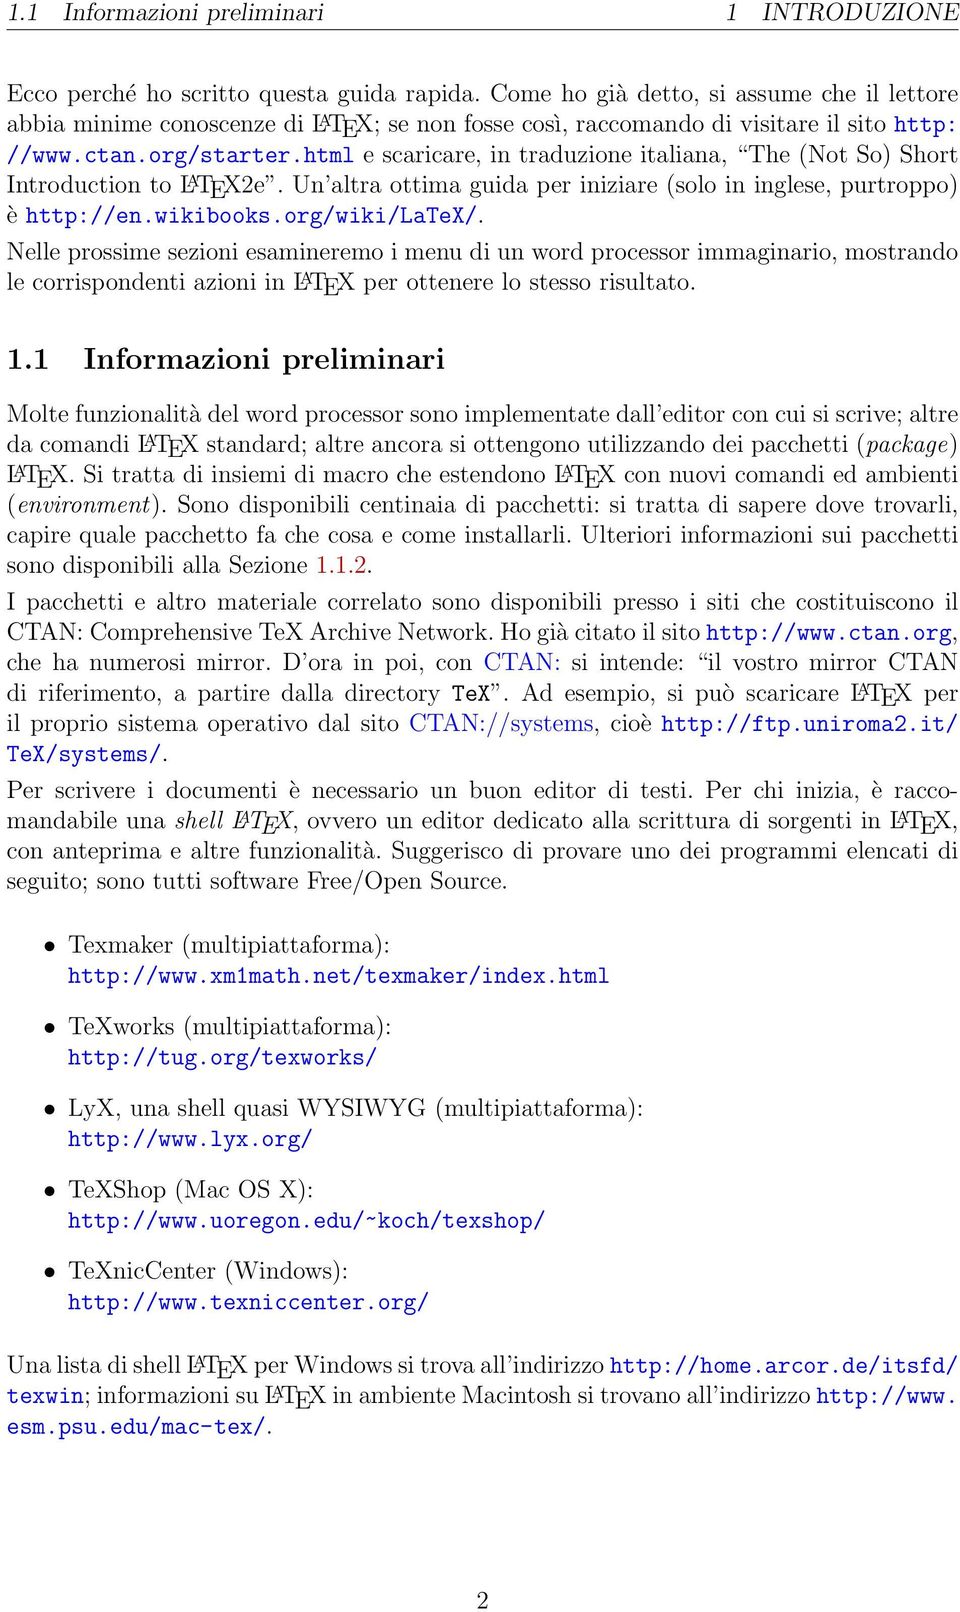 html e scaricare, in traduzione italiana, The (Not So) Short Introduction to L A TEX2e. Un altra ottima guida per iniziare (solo in inglese, purtroppo) è http://en.wikibooks.org/wiki/latex/.